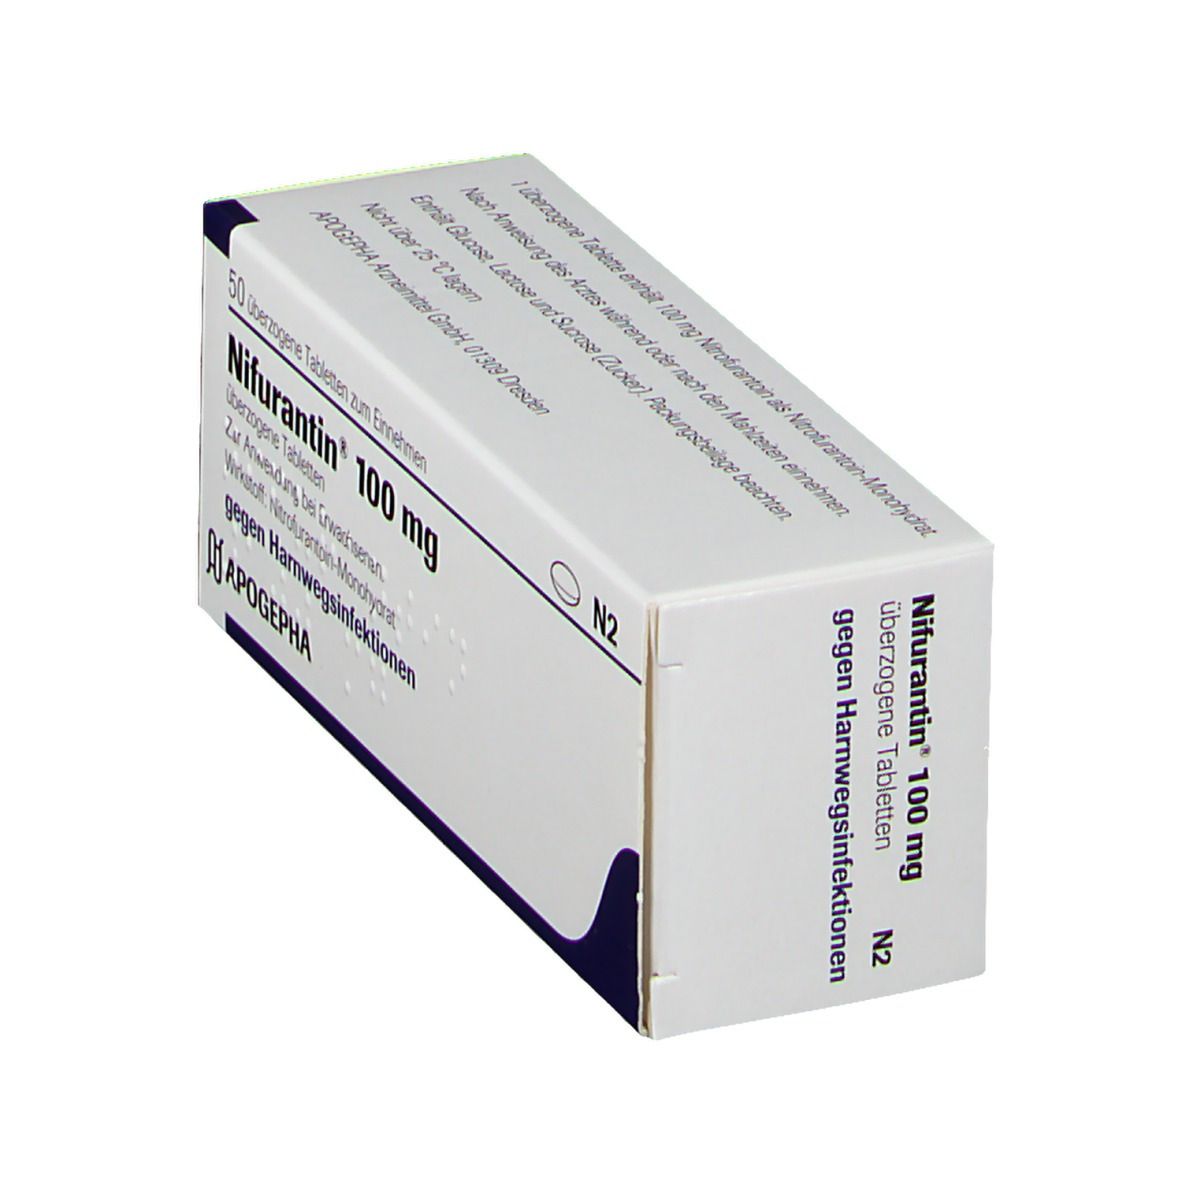 Nifurantin® 100 mg